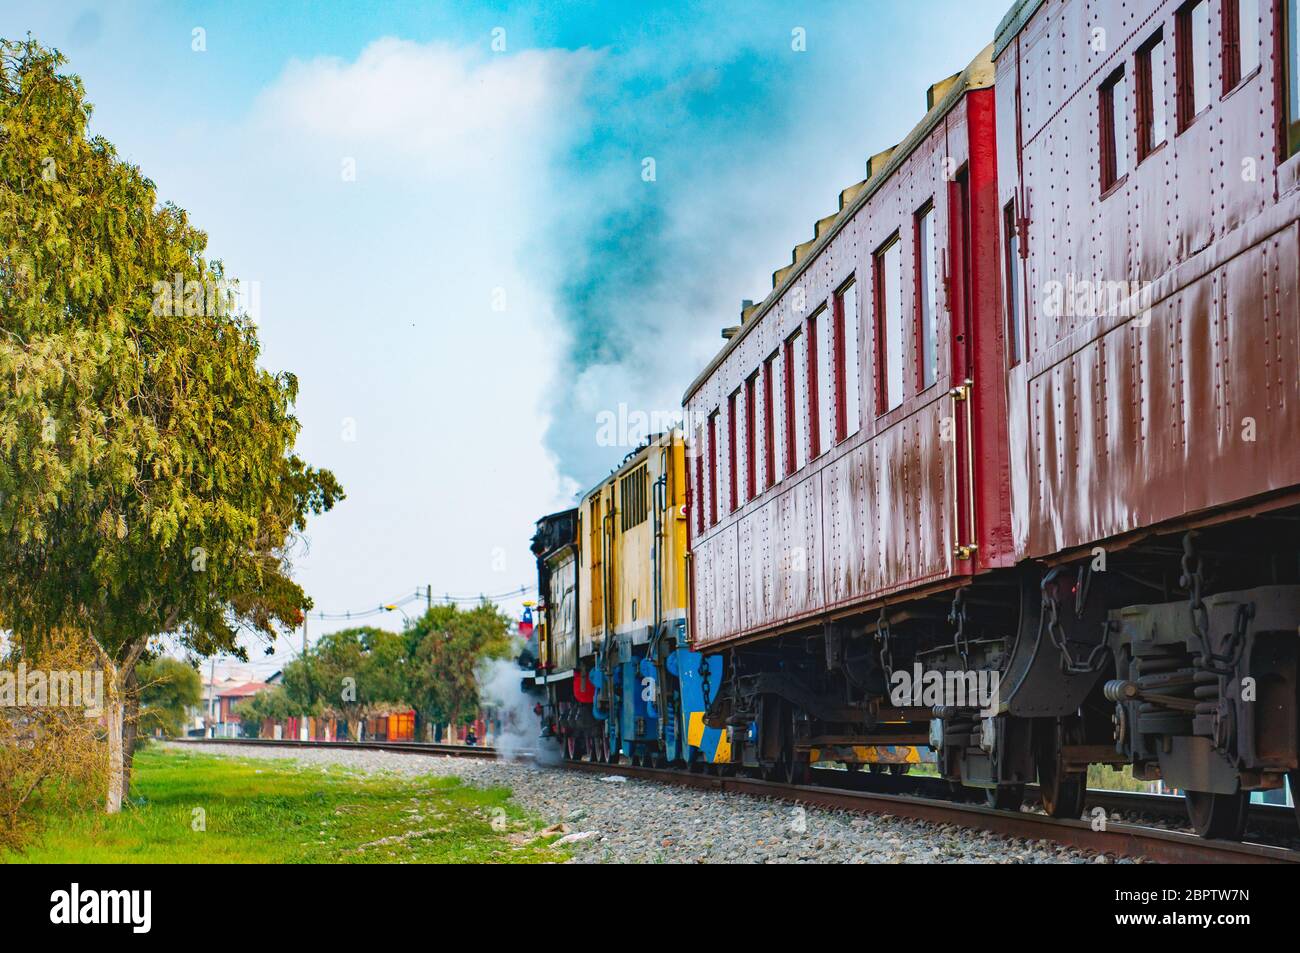 SANTIAGO, CILE - SETTEMBRE 2018: Un treno turistico a Cerrillos Foto Stock